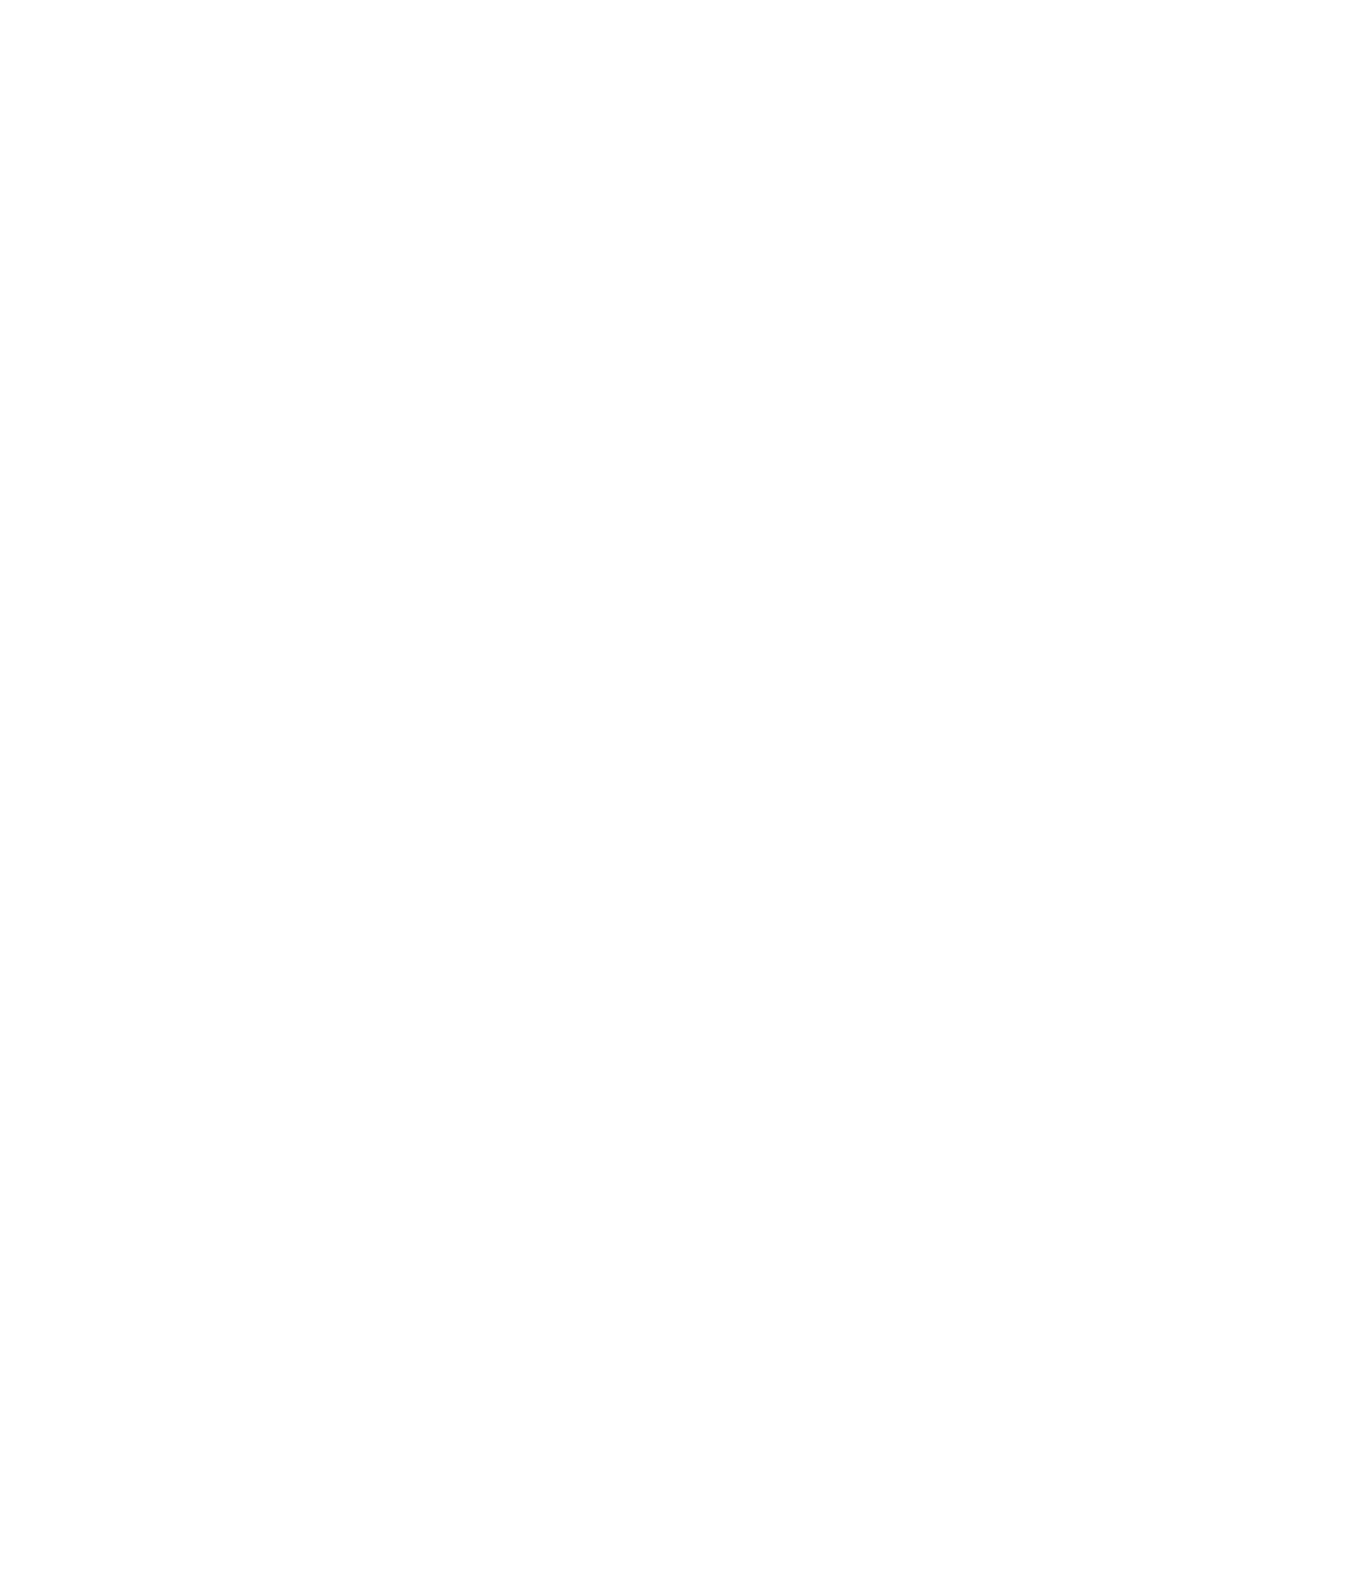 Leonardo DRS logo pour fonds sombres (PNG transparent)